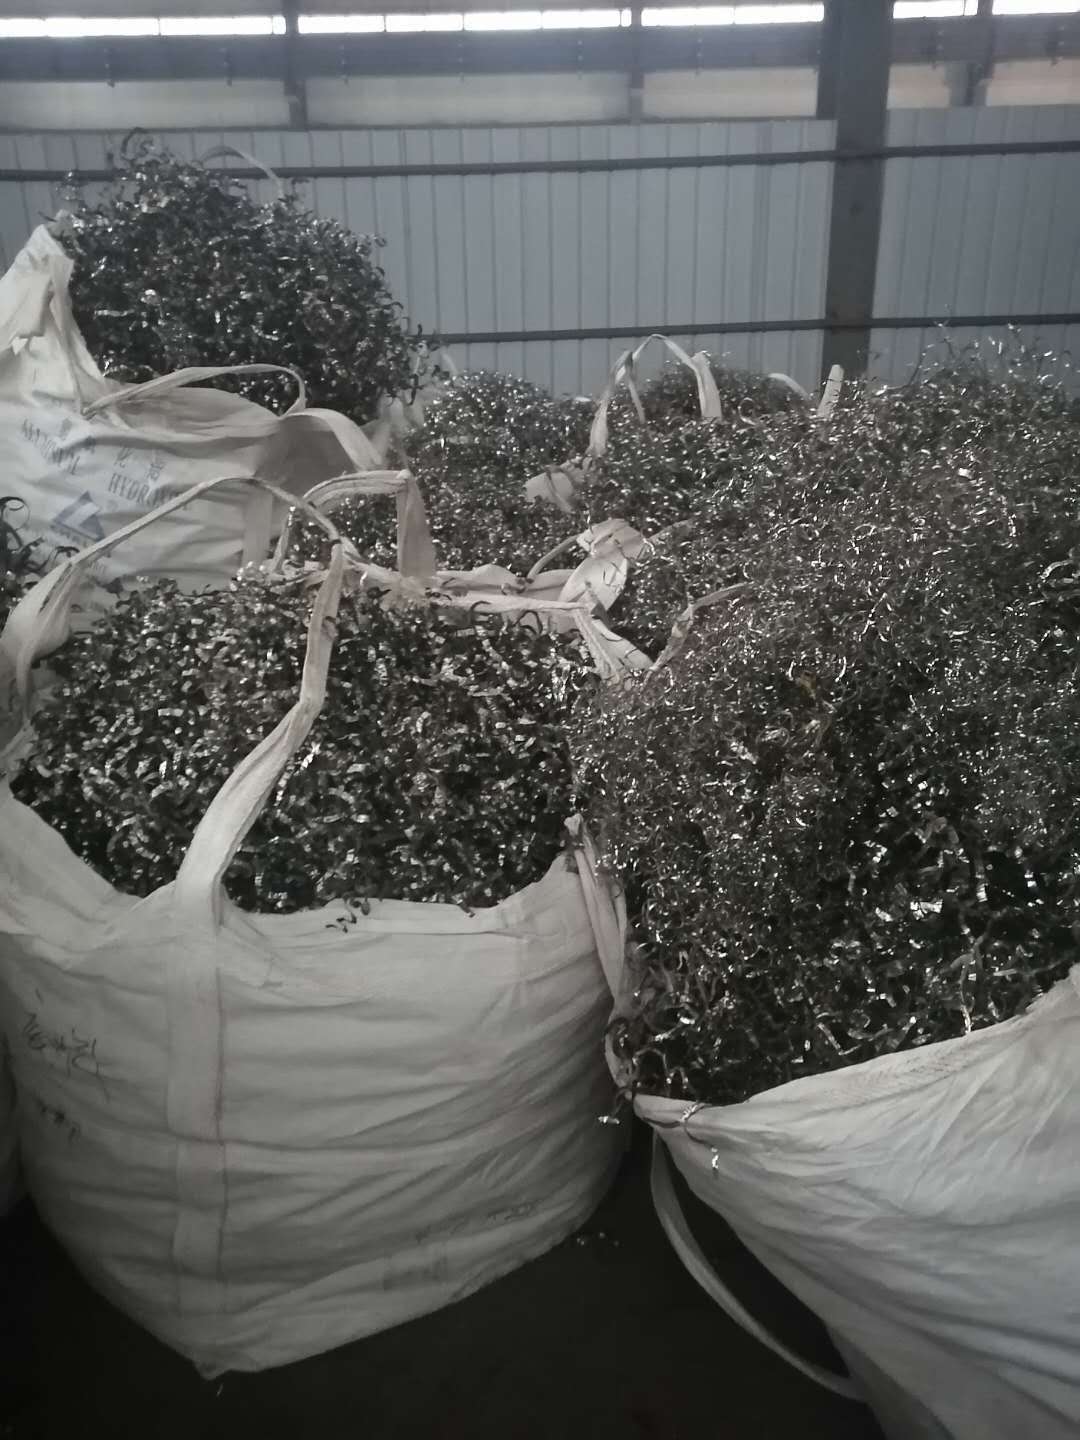 新疆回收钛多少钱一斤